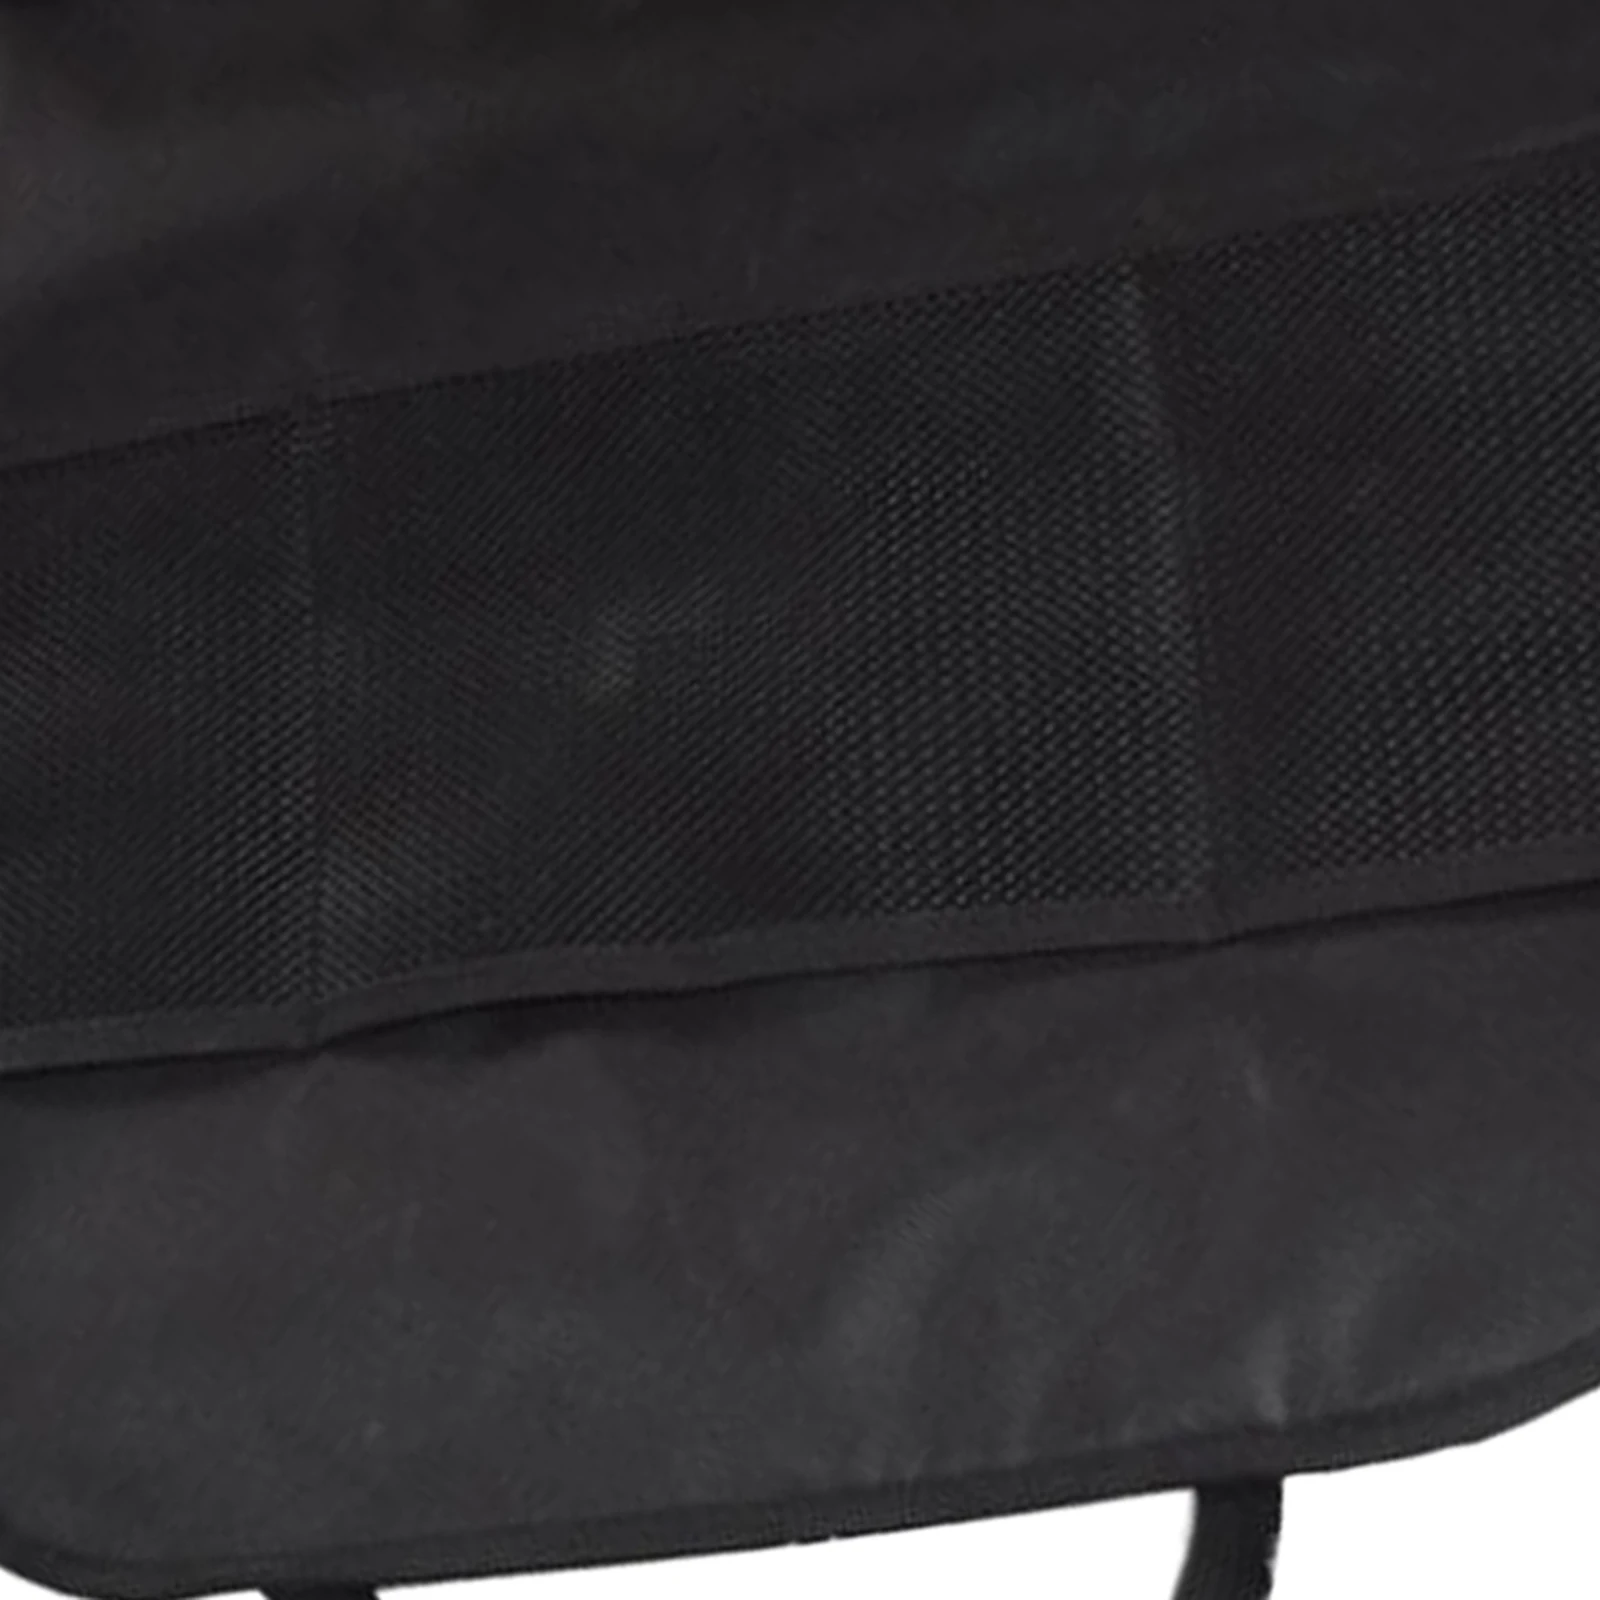  Back Anti  Seat   Trampling  Bottle Sundries Tissue Organizer Storage Pockets Children